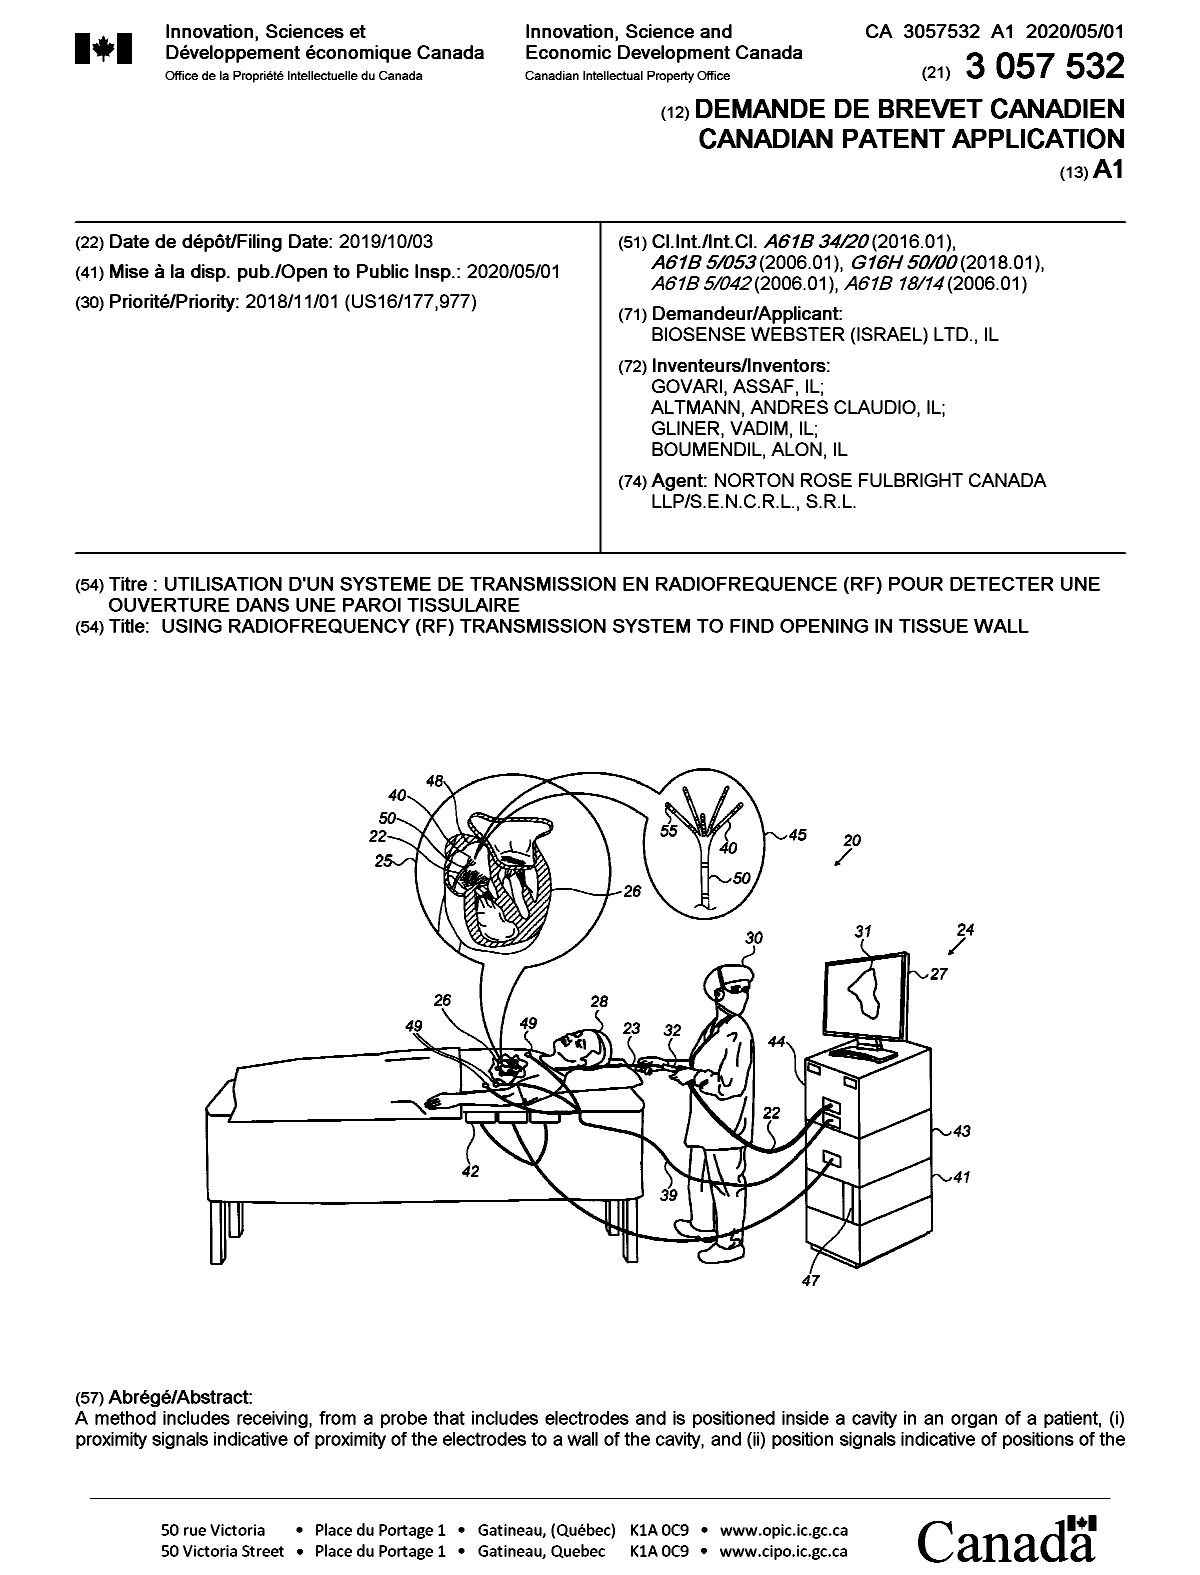 Document de brevet canadien 3057532. Page couverture 20200323. Image 1 de 2